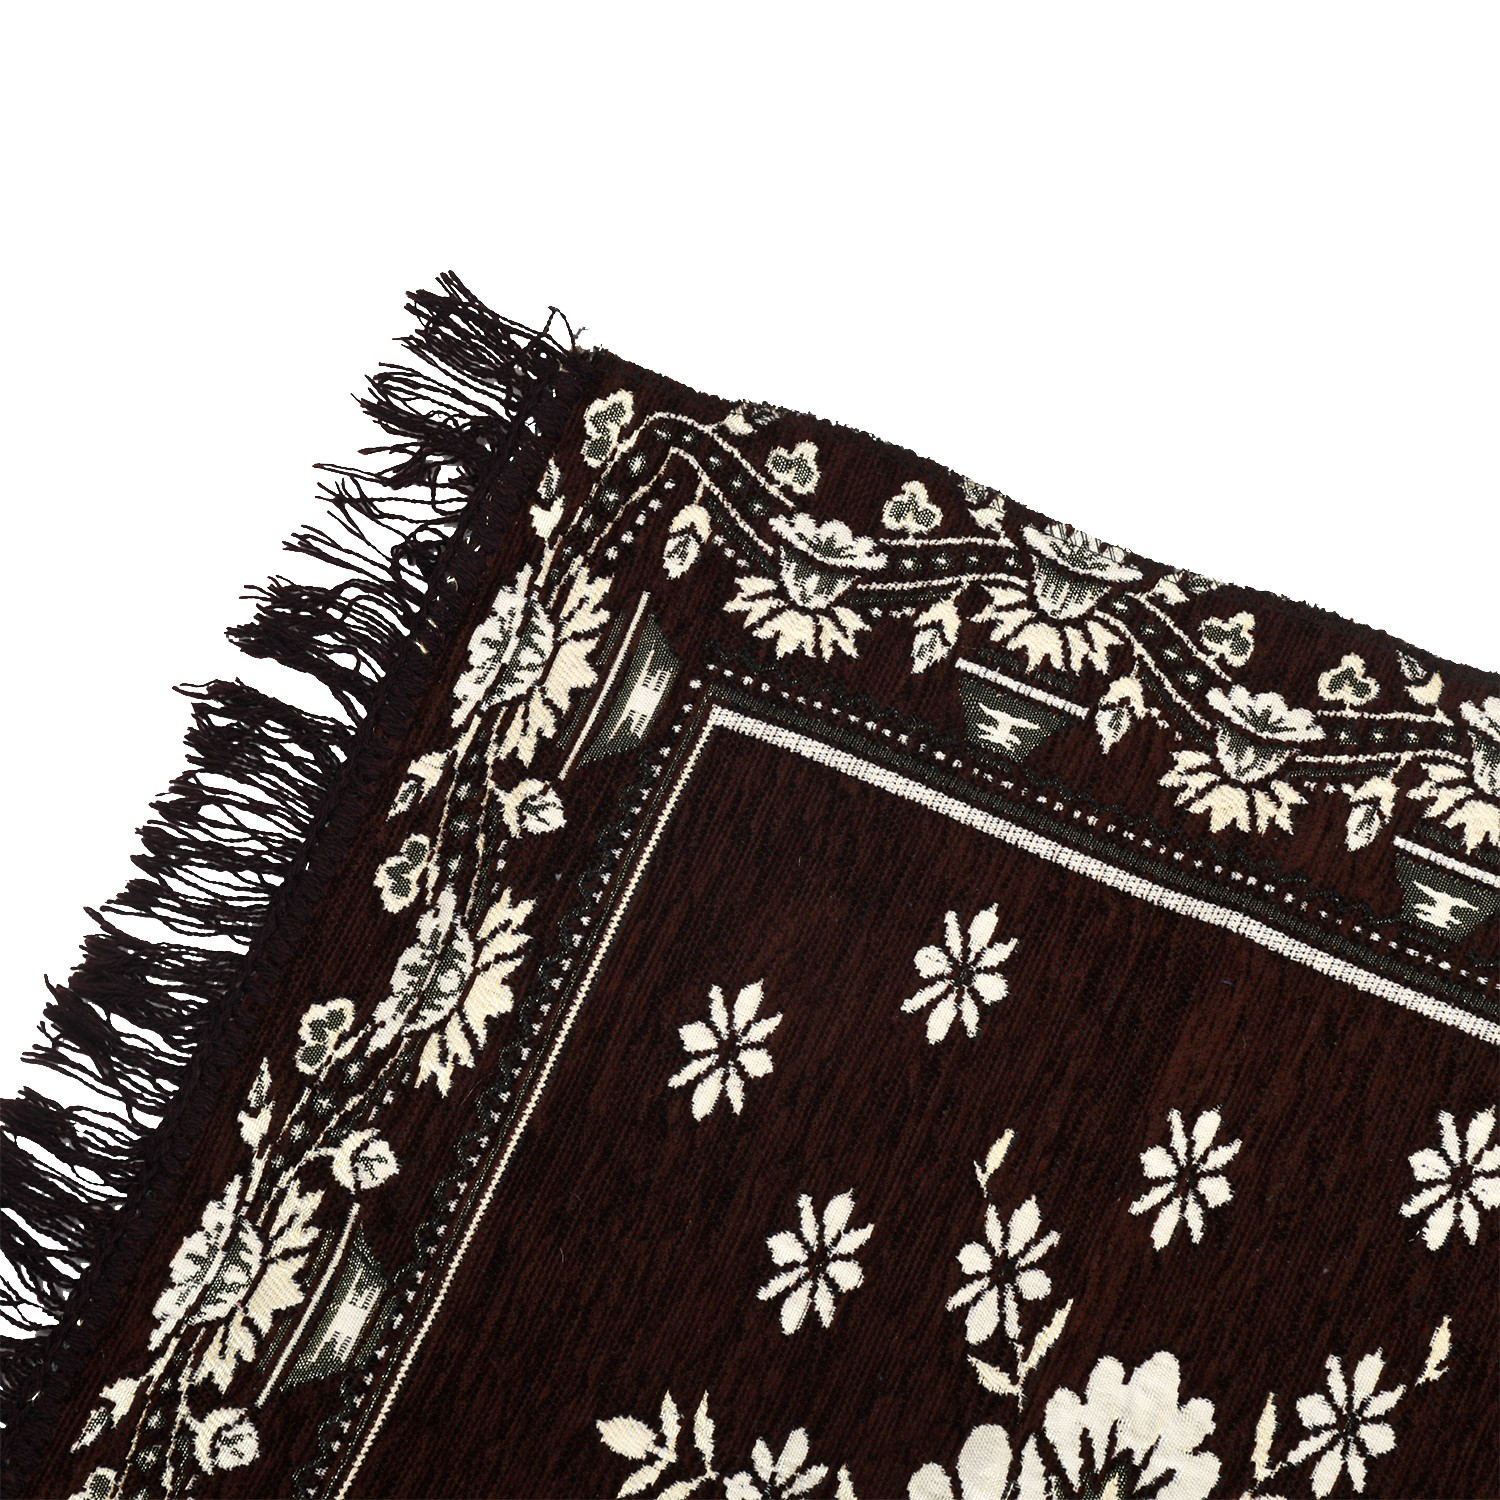 Kuber Industries Bed Side Runner|Velvet Decorative Anti Skid Floor Mat Runner|Flower Pattern for Hall, Kitchen, Living Room, 27 x 68 Inch ( Dark Brown)